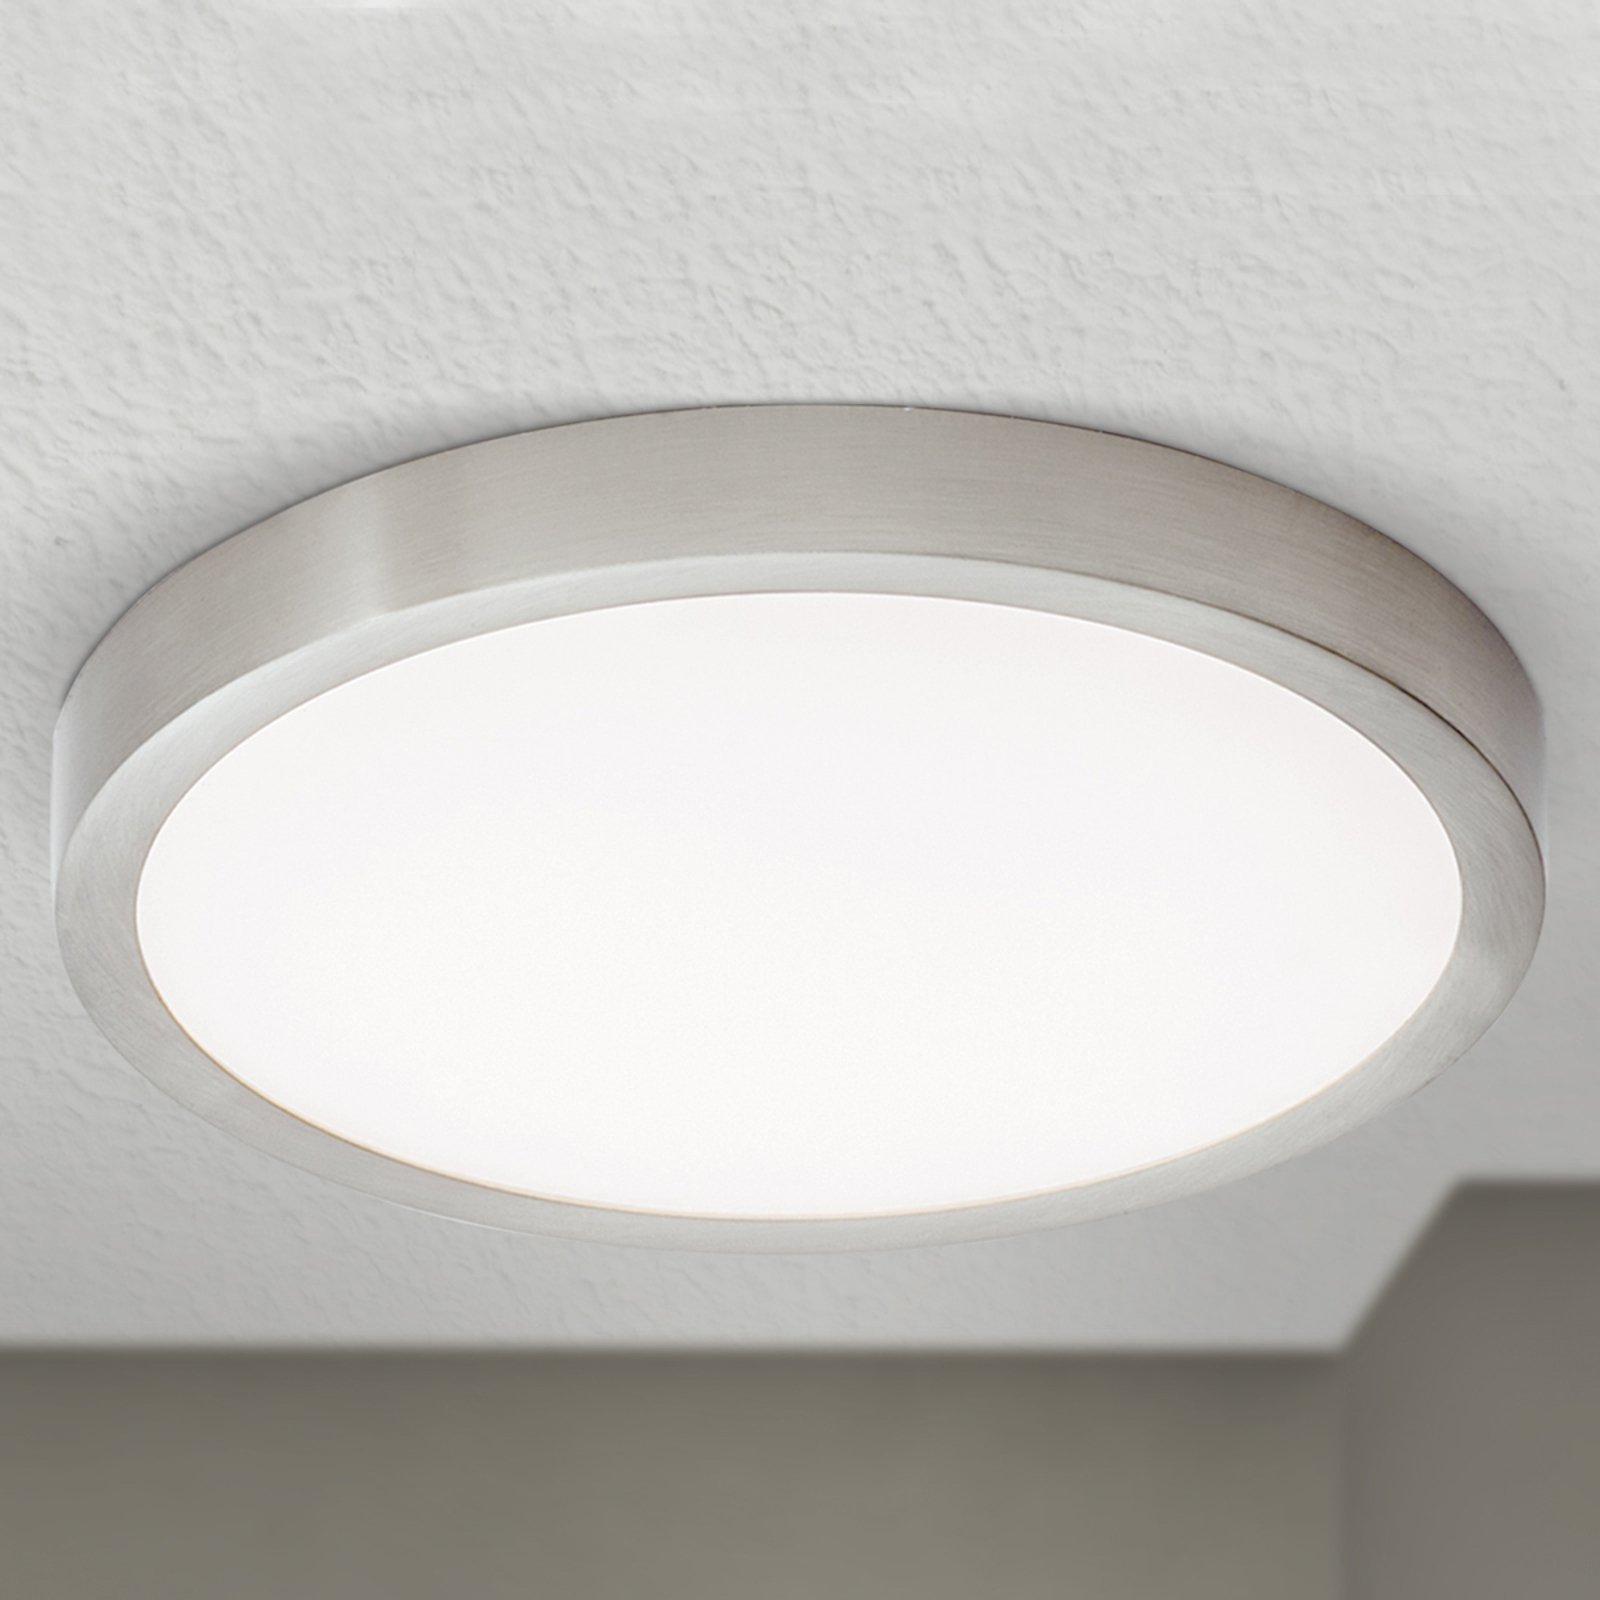 Φωτιστικό οροφής LED Vika, στρογγυλό, τιτάνιο ματ, Ø 23cm